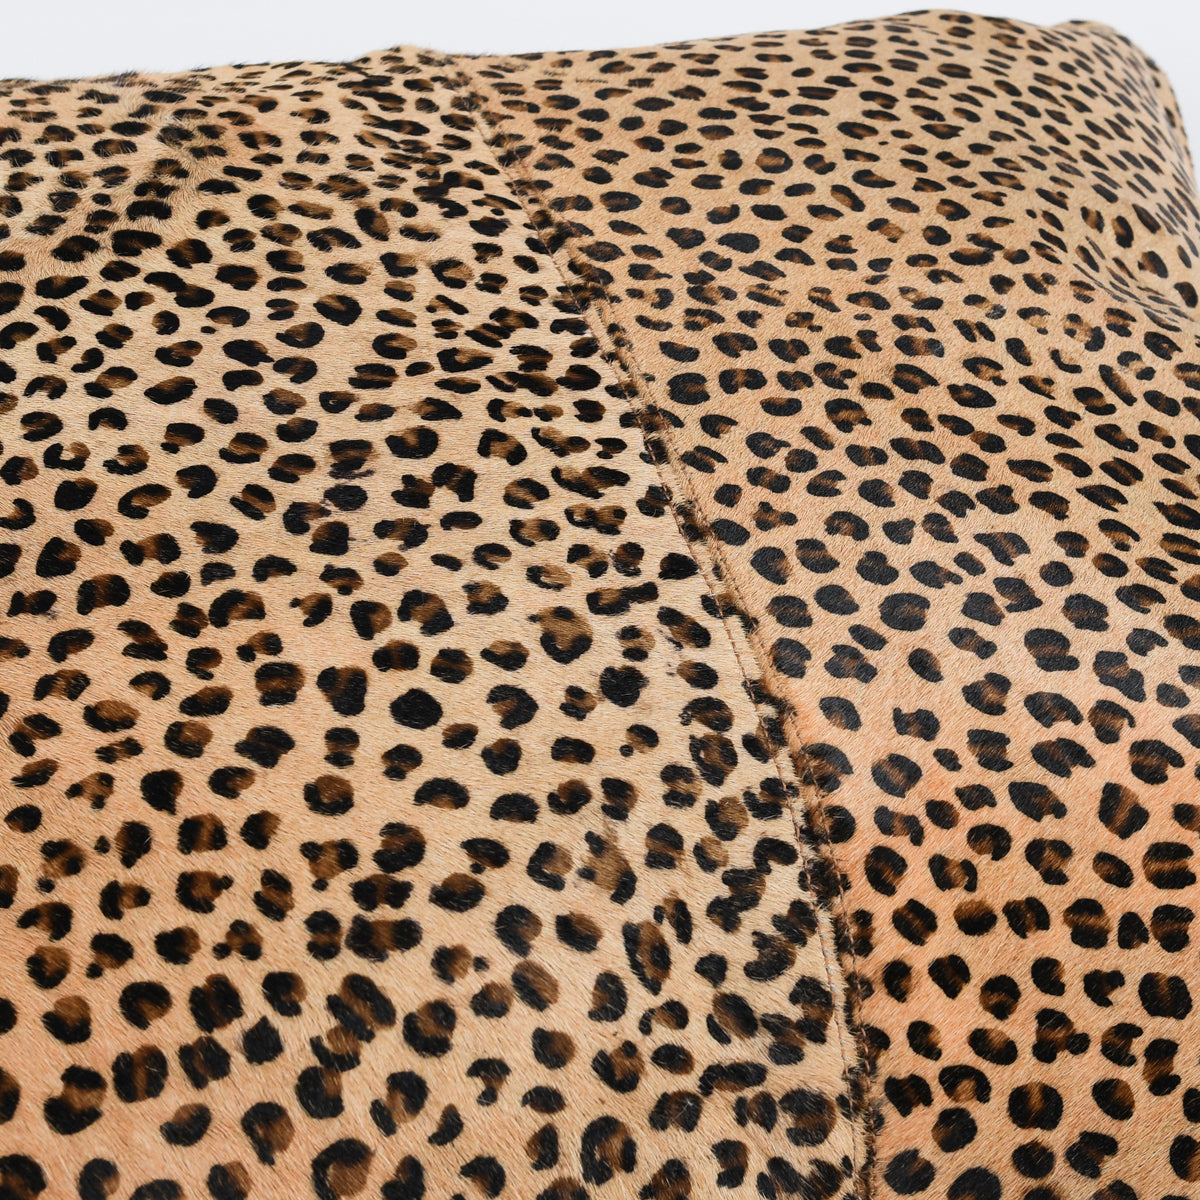 Leopard Hide Pillow- 20x20"